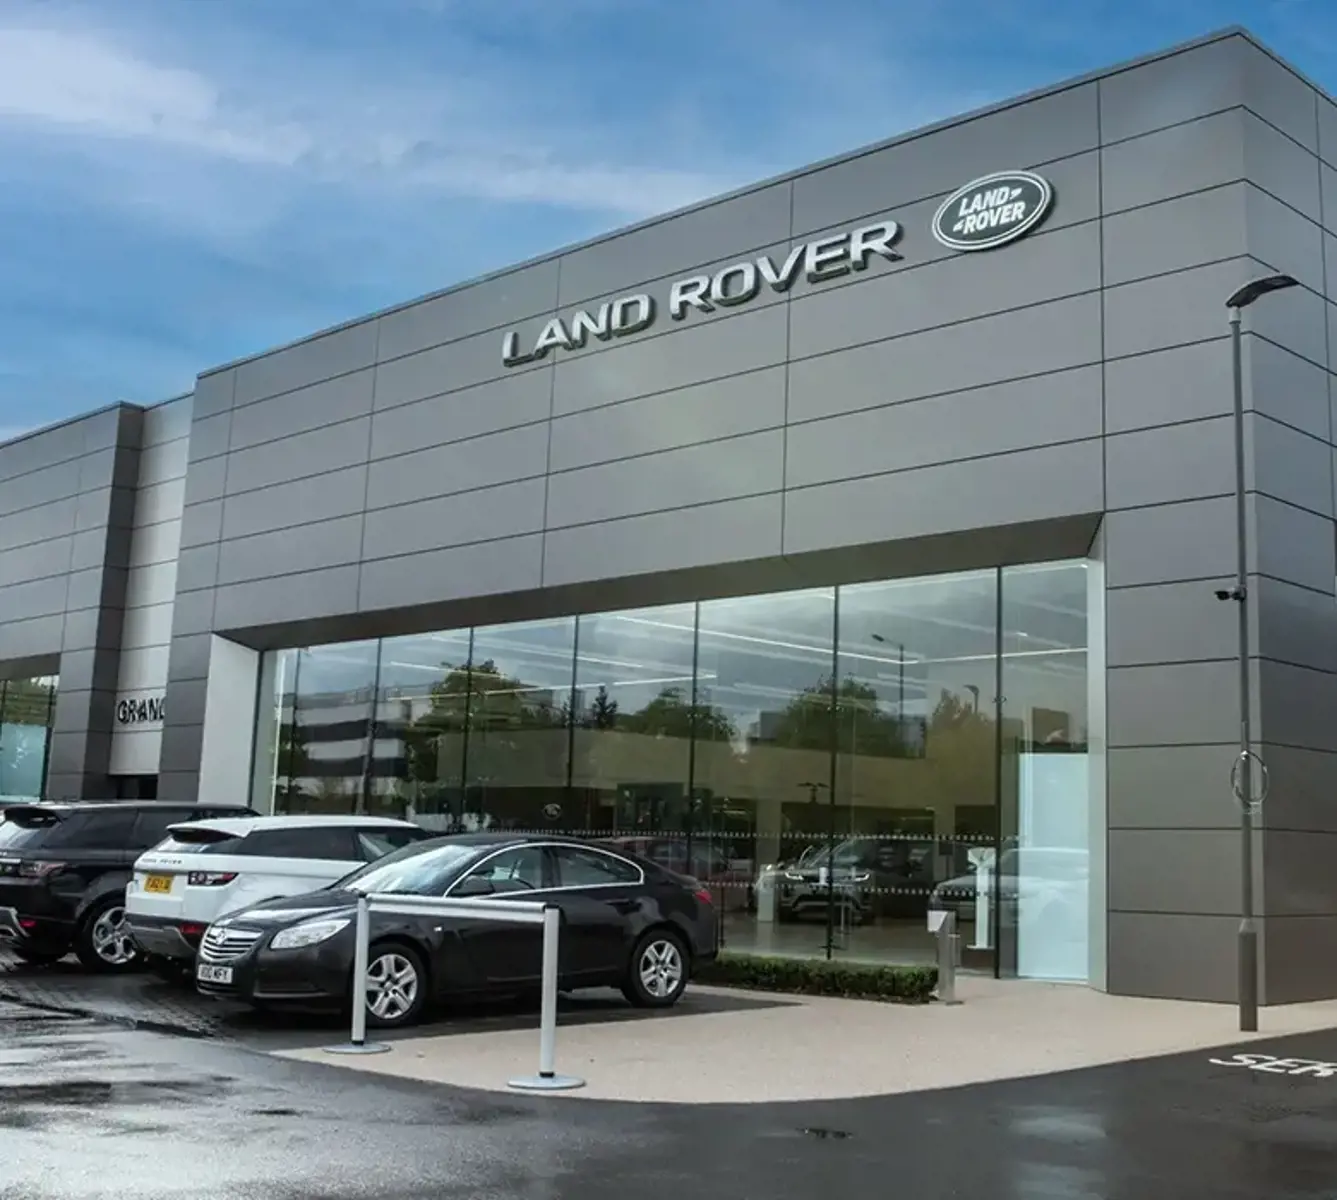 Find a Land Rover Retailer Near You